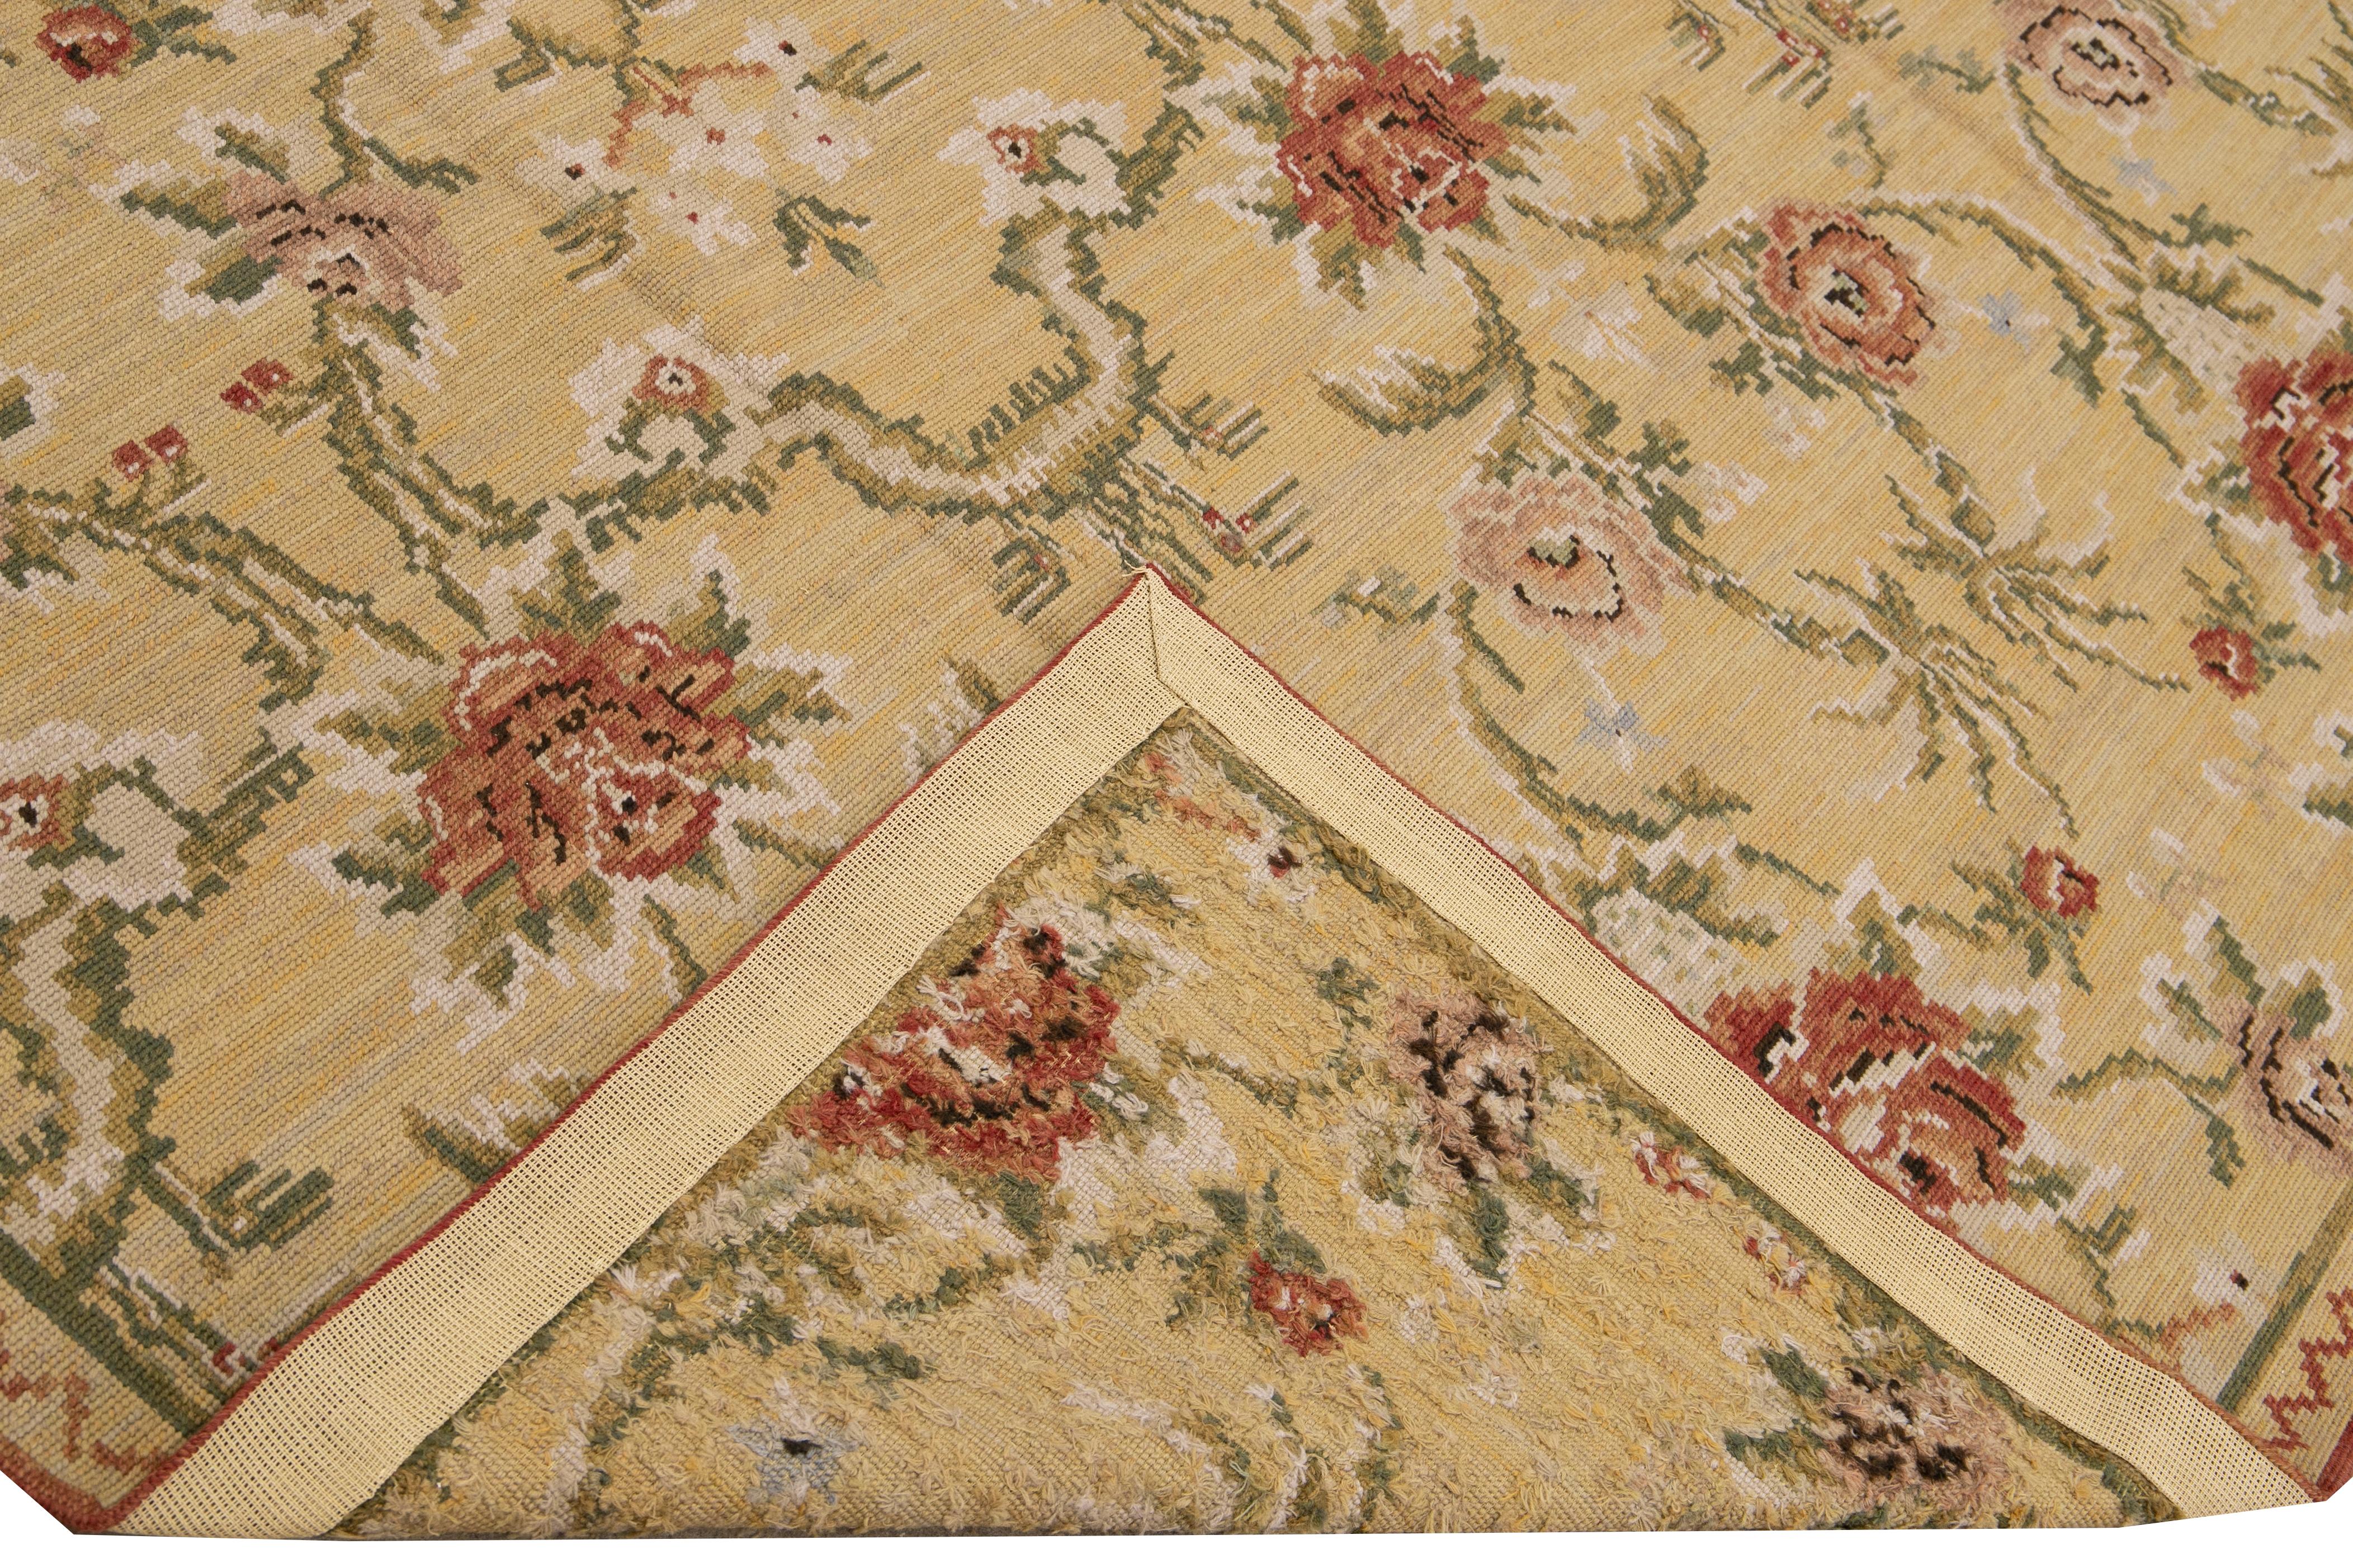 Magnifique tapis en laine aiguilleté de style français vintage avec un champ beige. Cette pièce a des accents verts, roses, roses et ivoires dans un magnifique motif floral. 

Ce tapis mesure 7'10